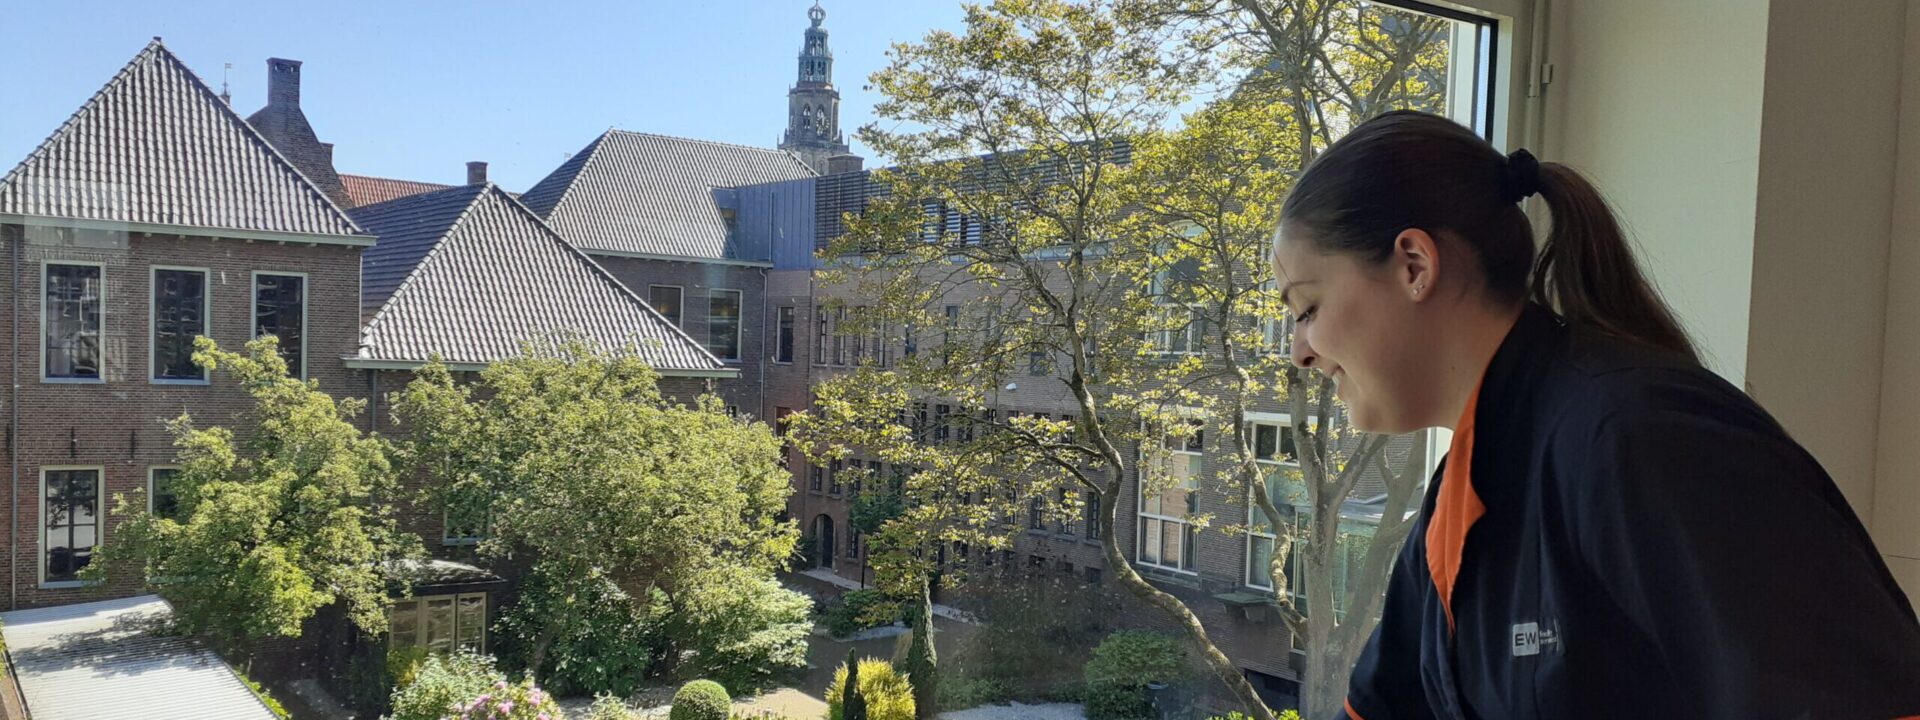 Rijksuniversiteit Groningen: Schoonmaak is meer dan ooit proactief en positief meedenken